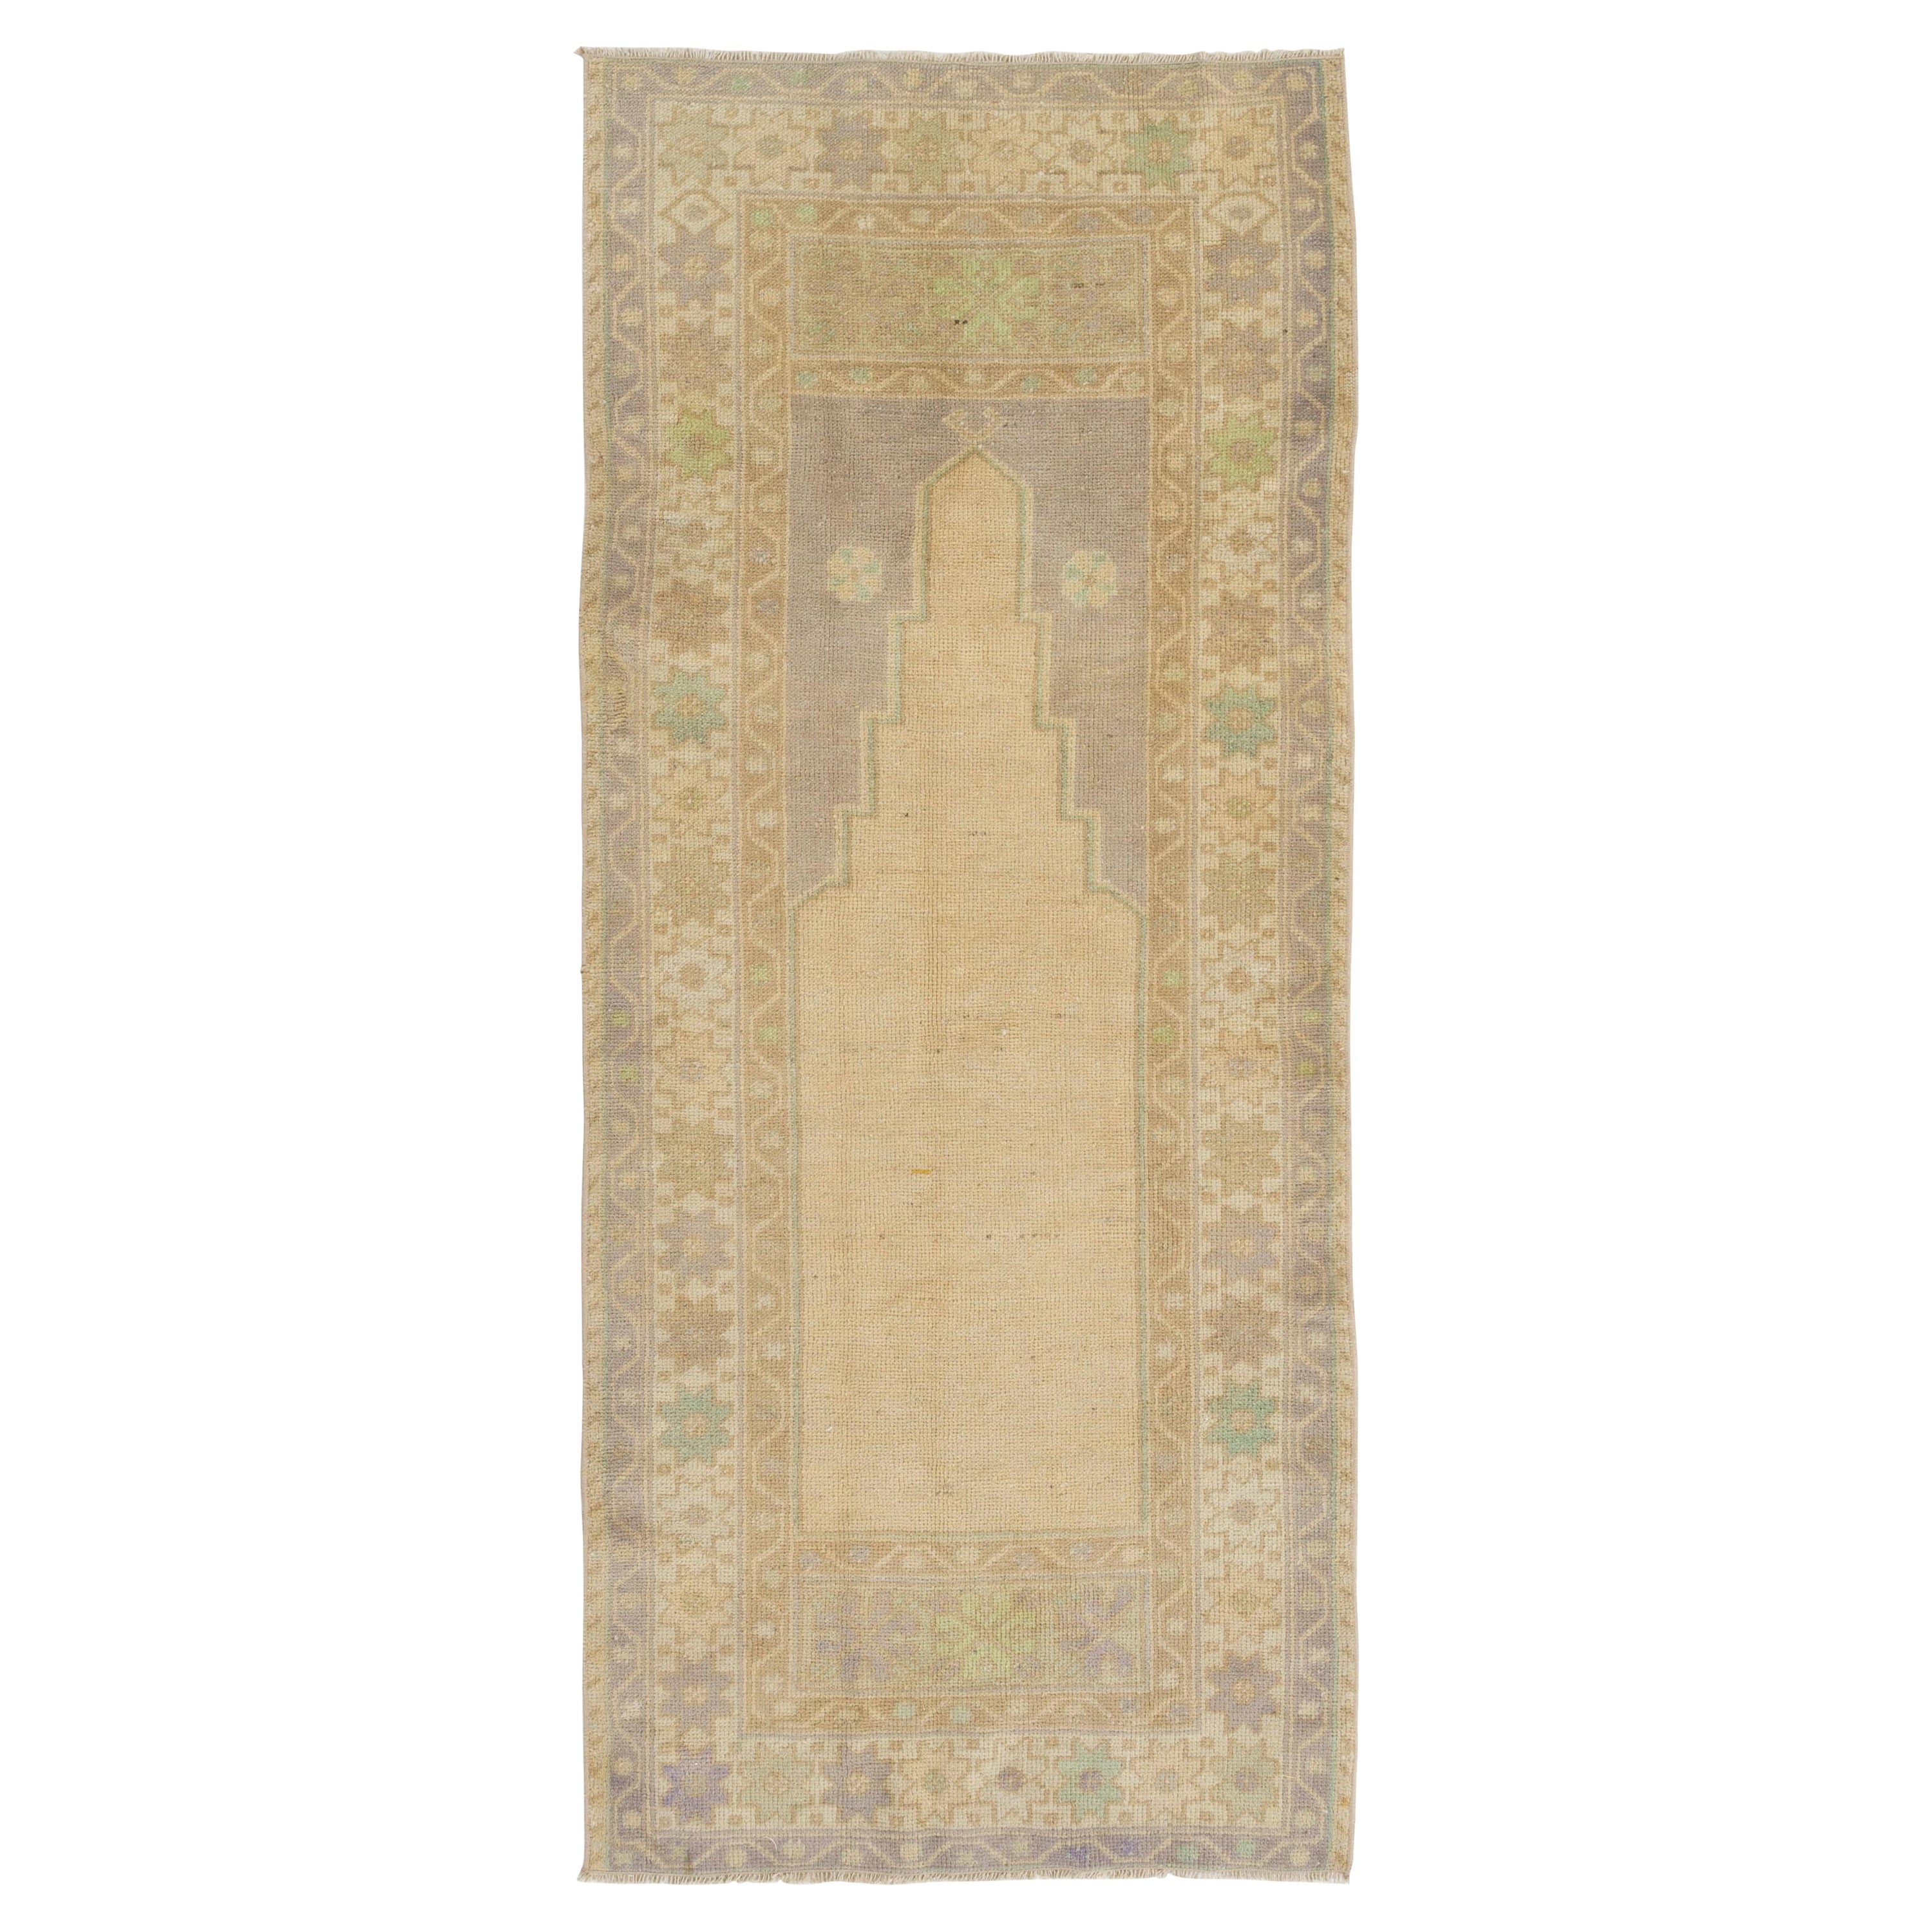 2.8x6.6 Ft Verblasster türkischer Gebetsteppich, handgefertigter Vintage-Akzentteppich. Beige Türmatte